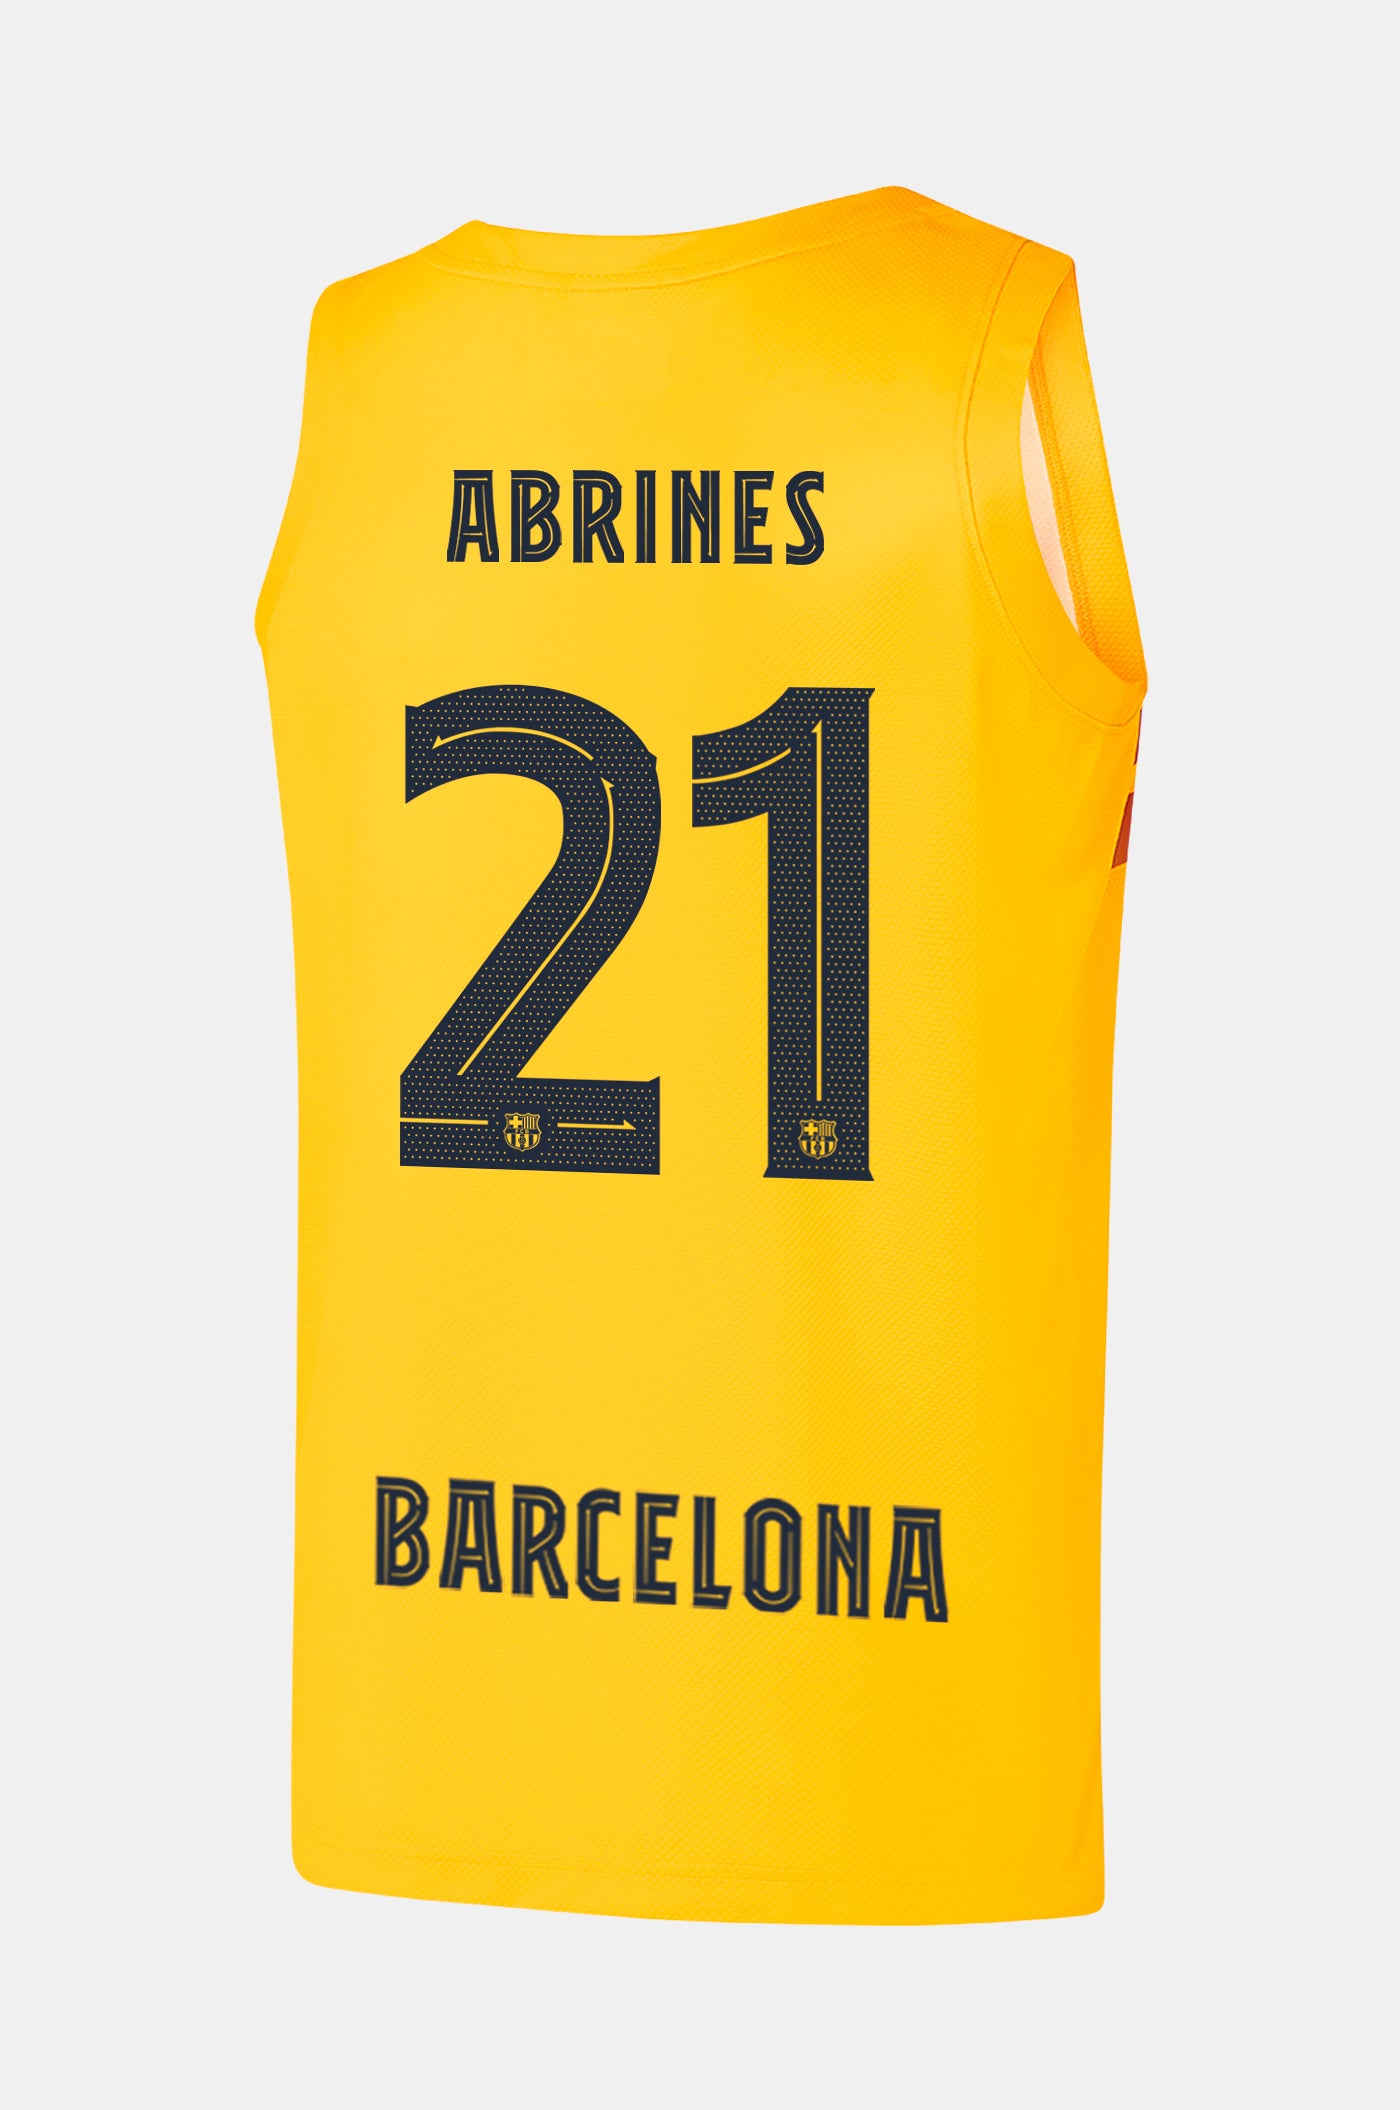 EUROLEAGUE - Samarreta bàsquet 4t equipament FC Barcelona 22/23 - ABRINES